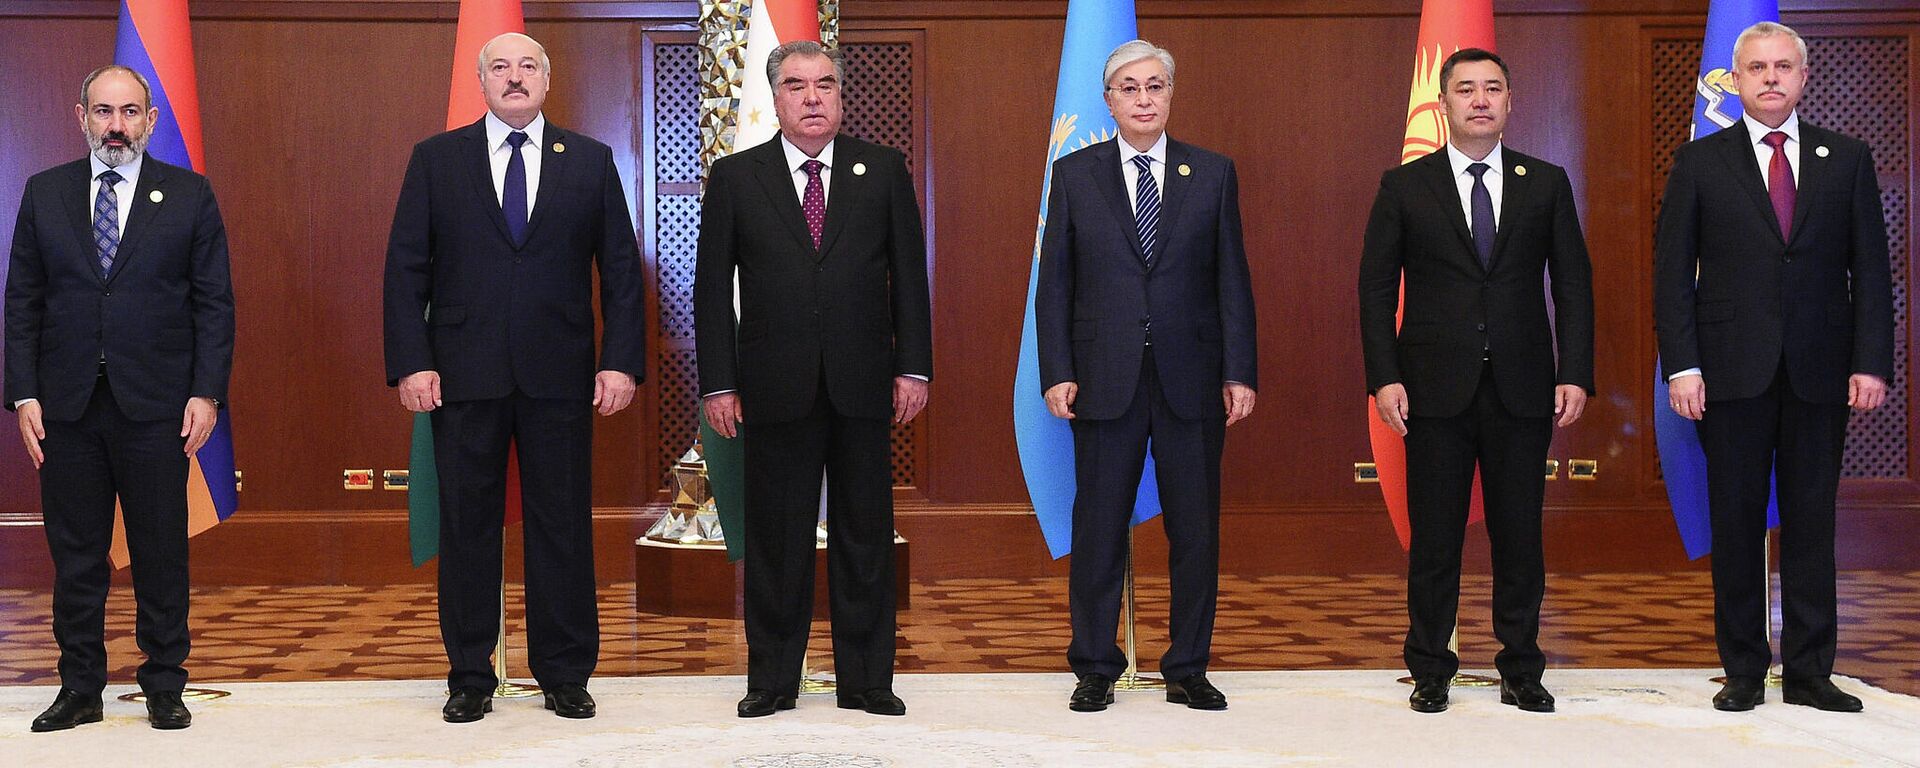 Страны участники заседание Совета коллективной безопасности ОДКБ - Sputnik Таджикистан, 1920, 16.09.2021